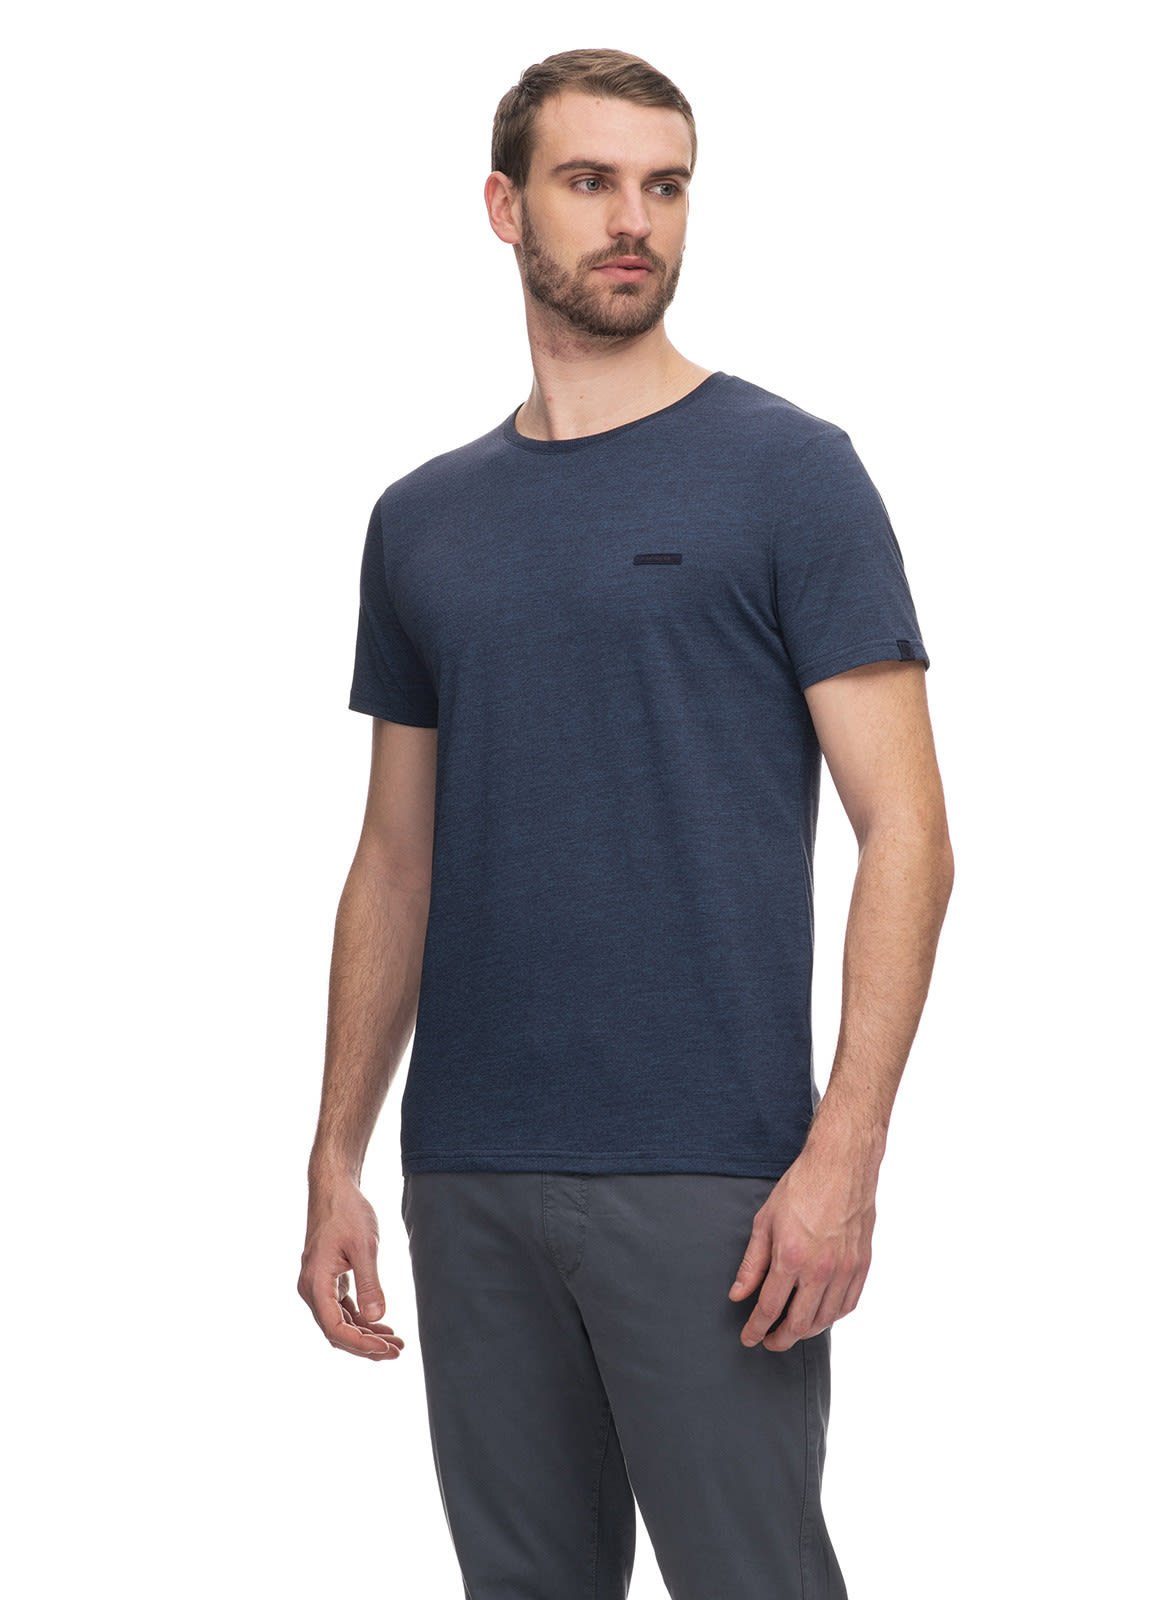 M T-Shirt Kurzarm-Shirt Herren Navy Nedie Ragwear Ragwear